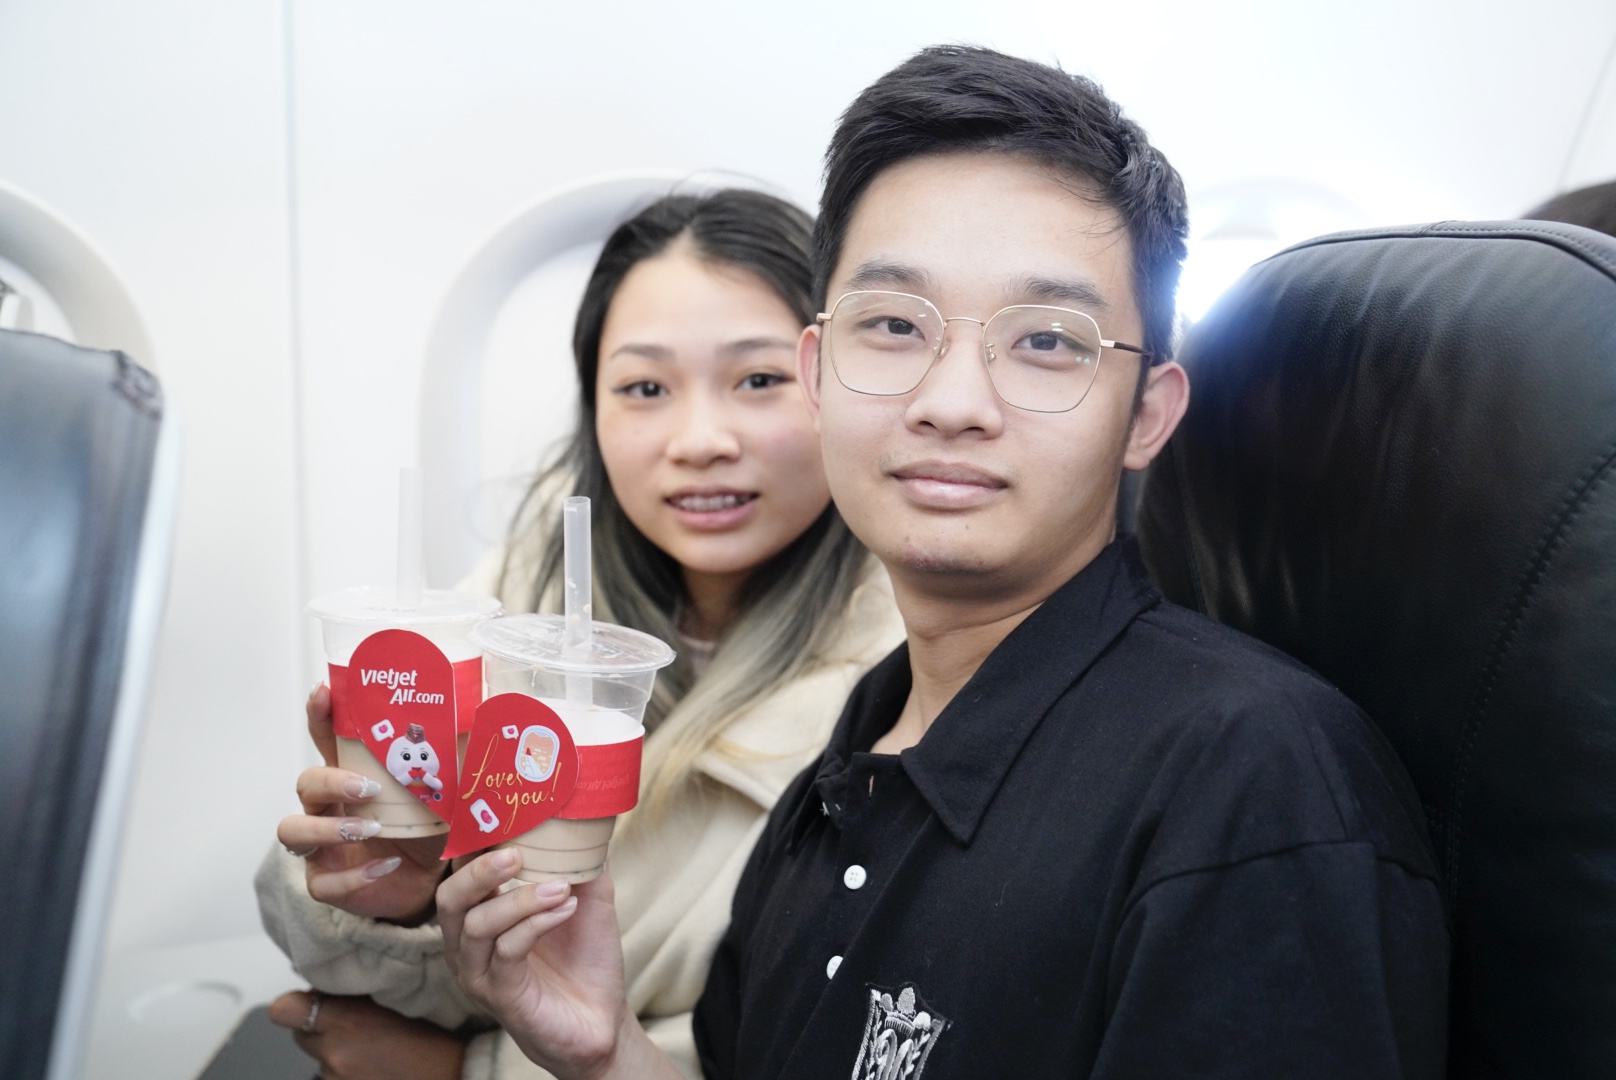 Cụ ông U90 tỏ tình với vợ ngọt ngào trên chuyến bay Vietjet ngày Valentine- Ảnh 6.